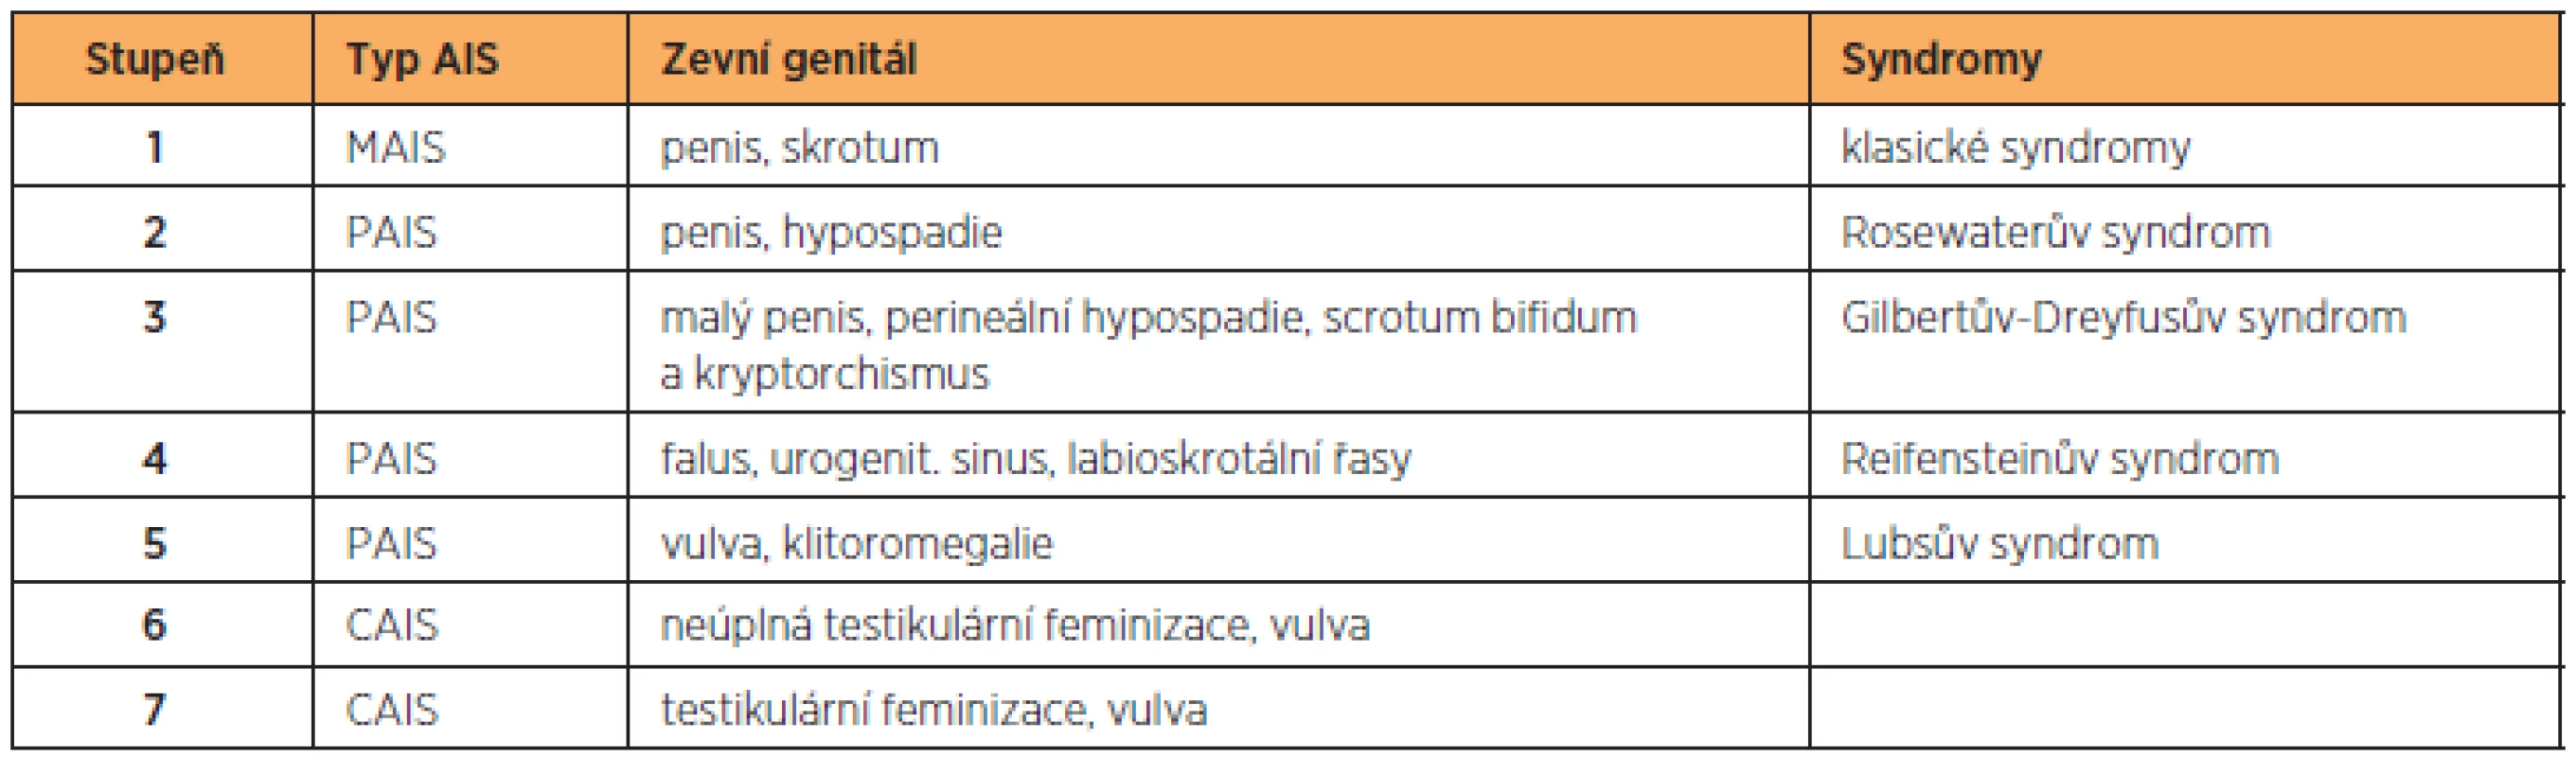 Klinická klasifikace AIS [8] (upravena podle Lisé [4])